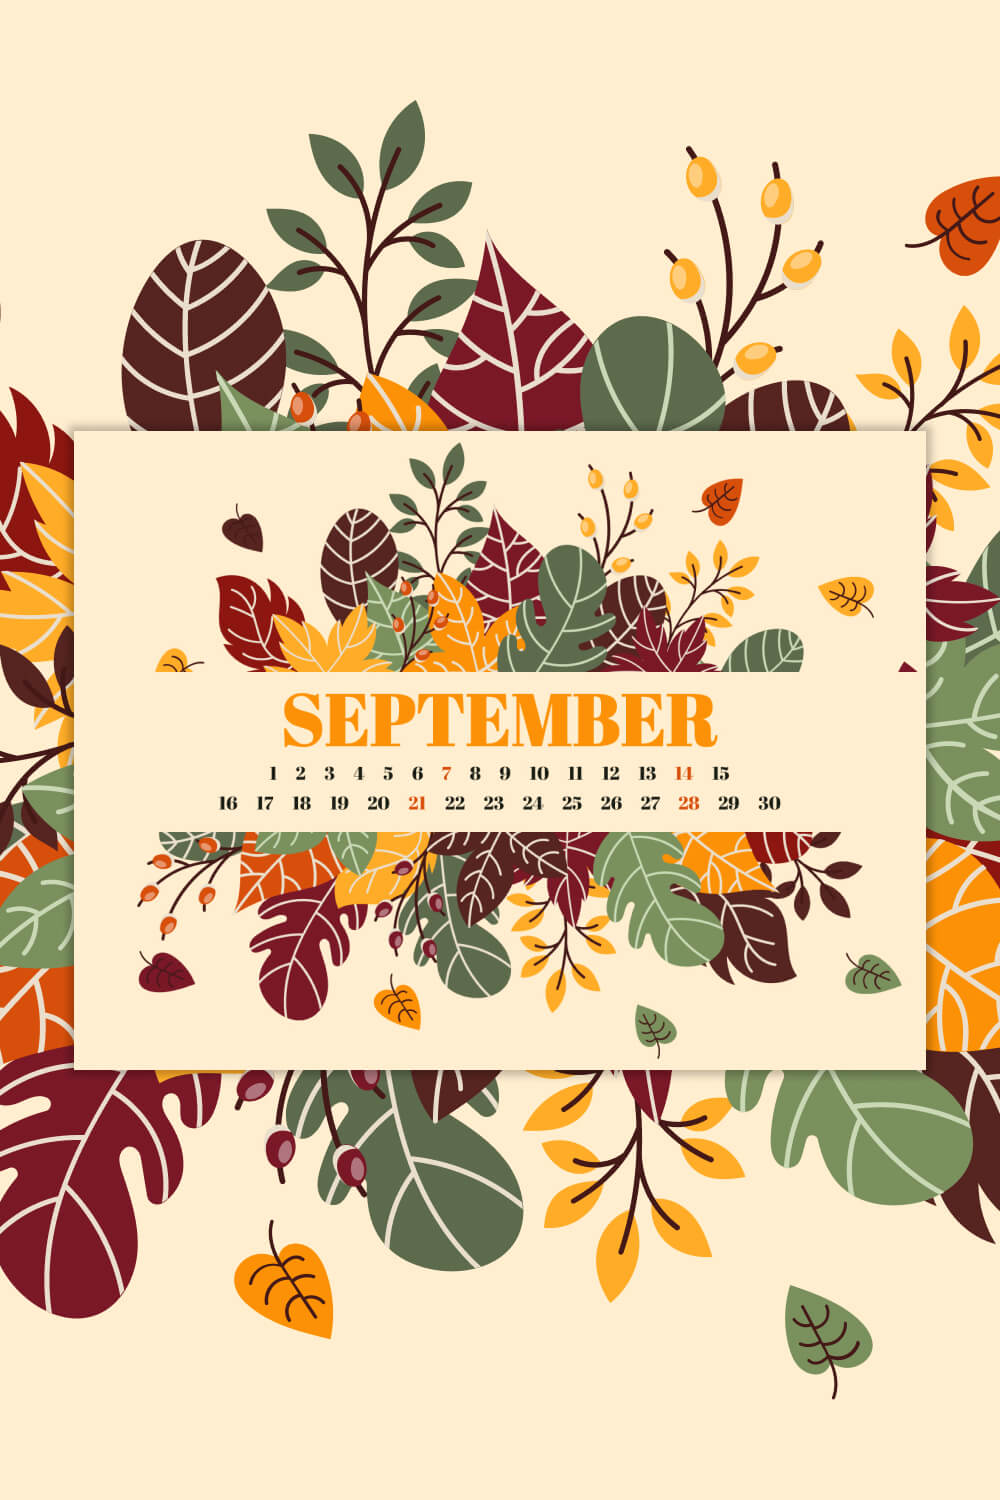 Free Editable Fall Leaves September Printable Calendar Pinterest Image.